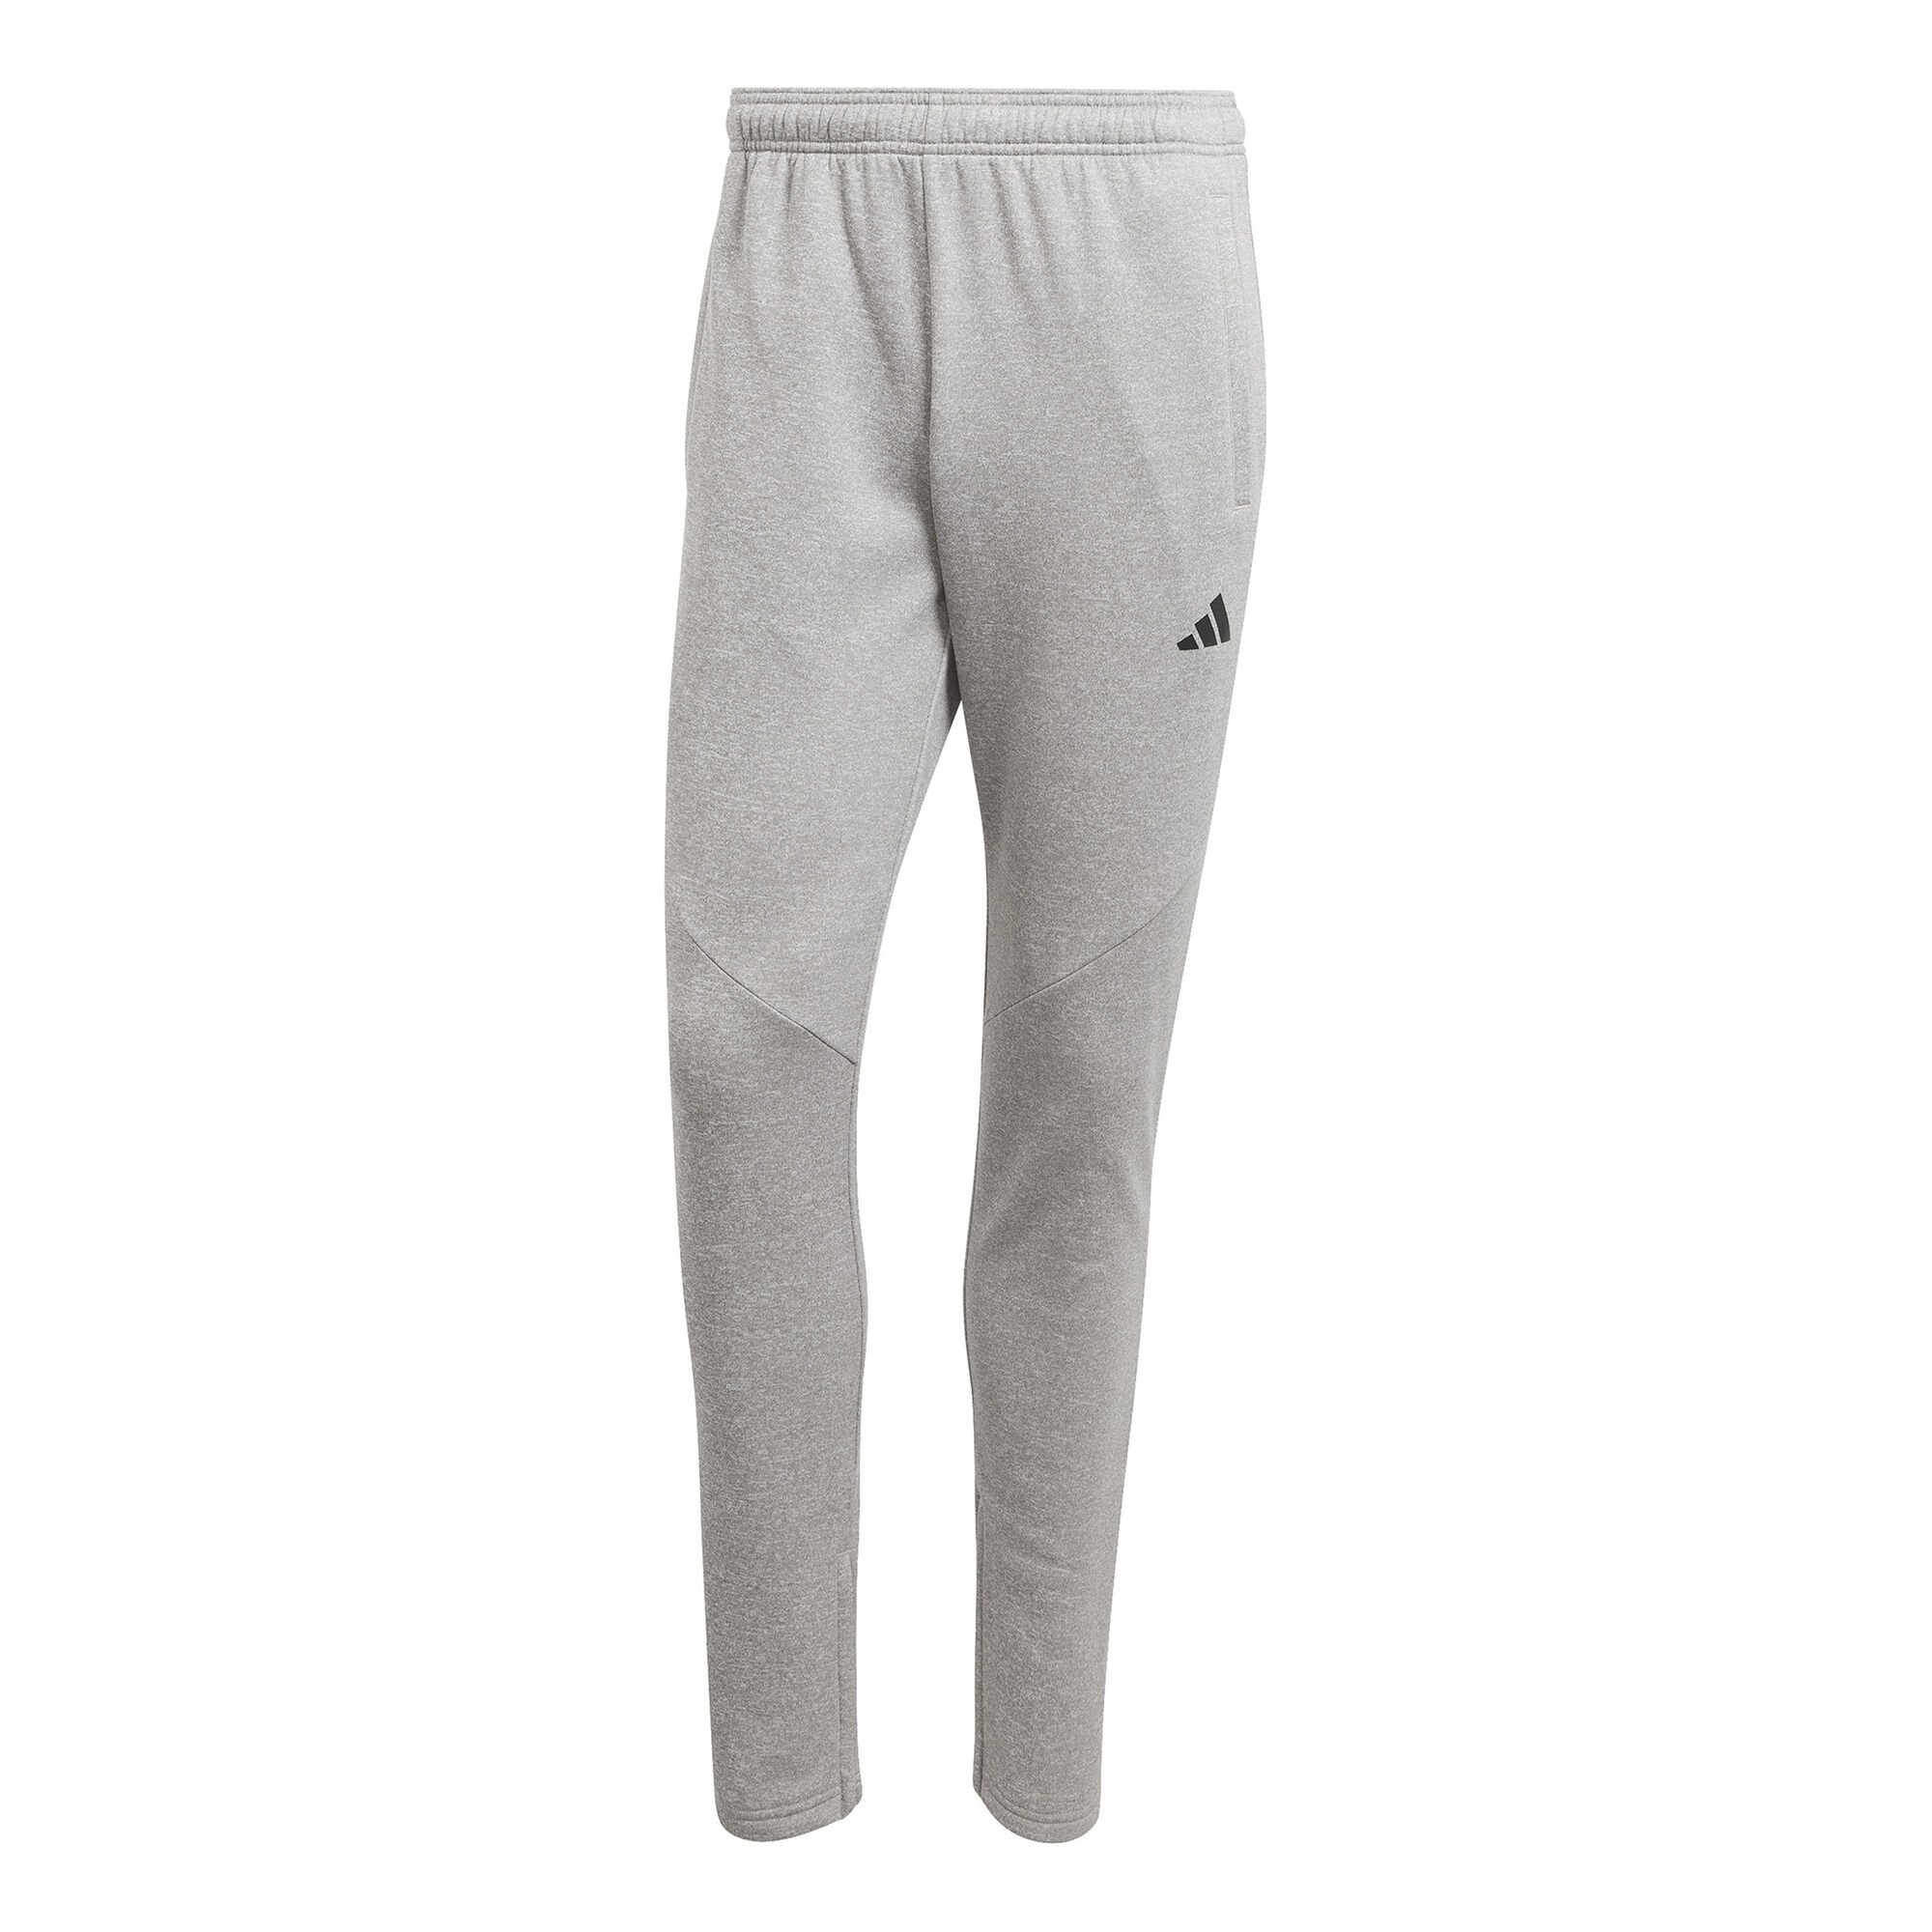 adidas originals 3-Stripes Pant - Pantalon de survêtement - Homme (Gris) -  Vêtements chez Sarenza (550143)